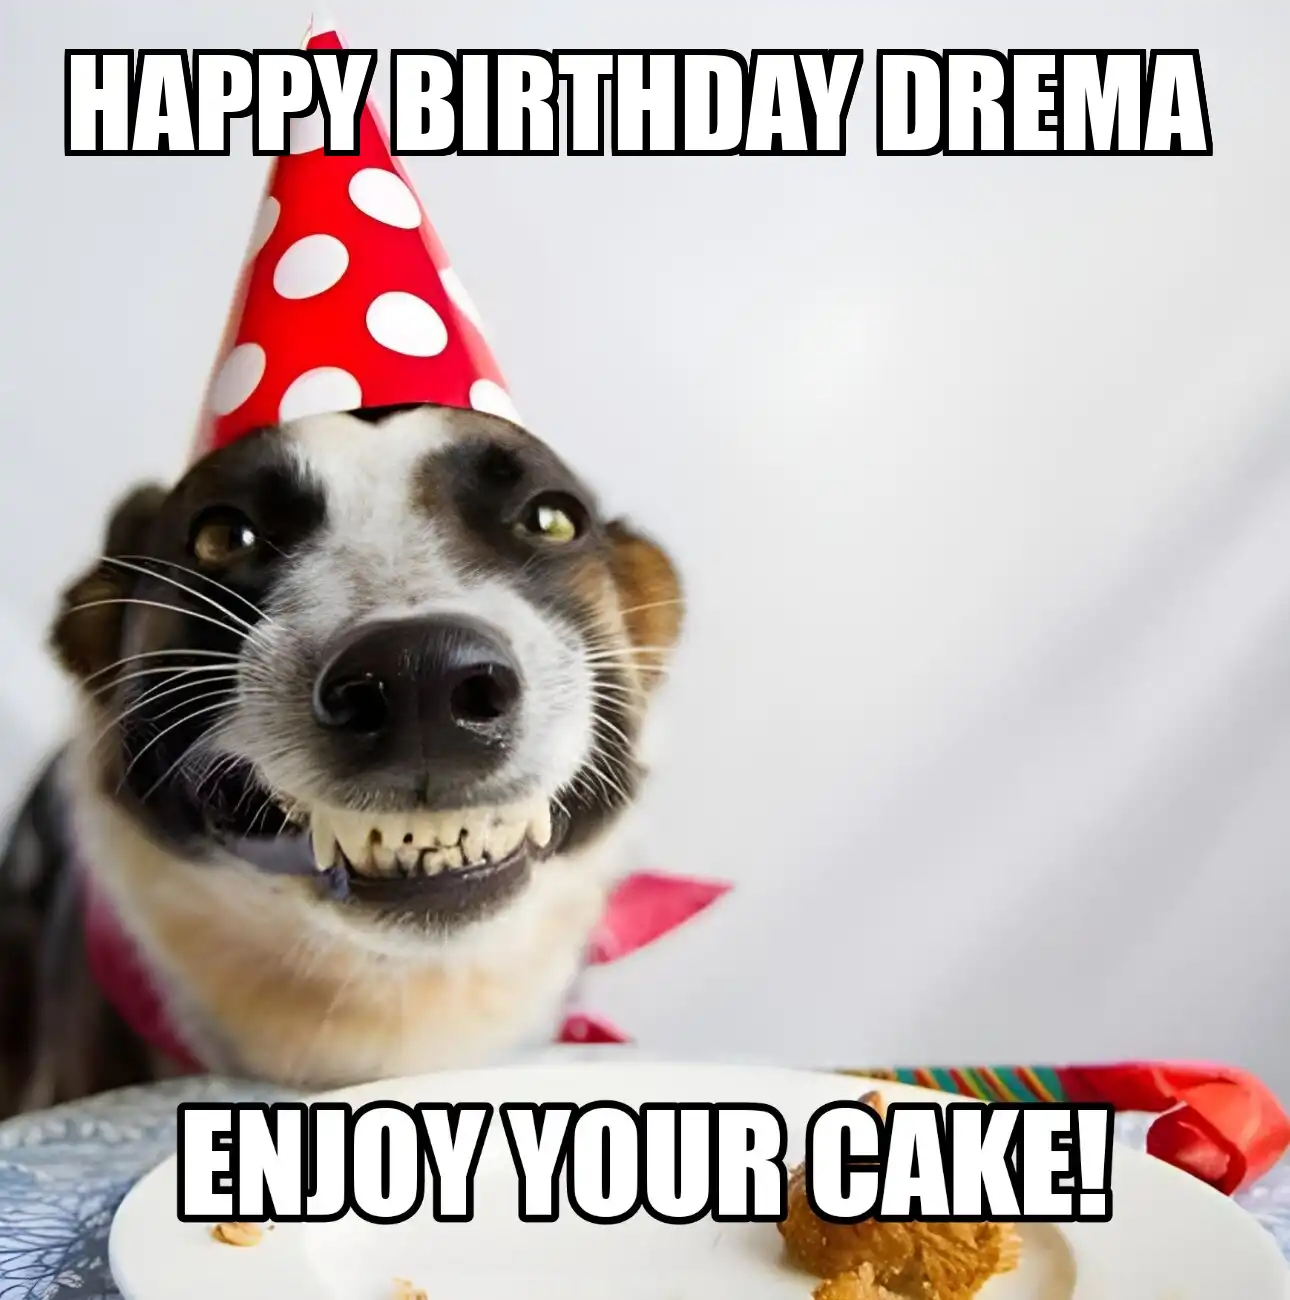 Happy Birthday Drema Enjoy Your Cake Dog Meme